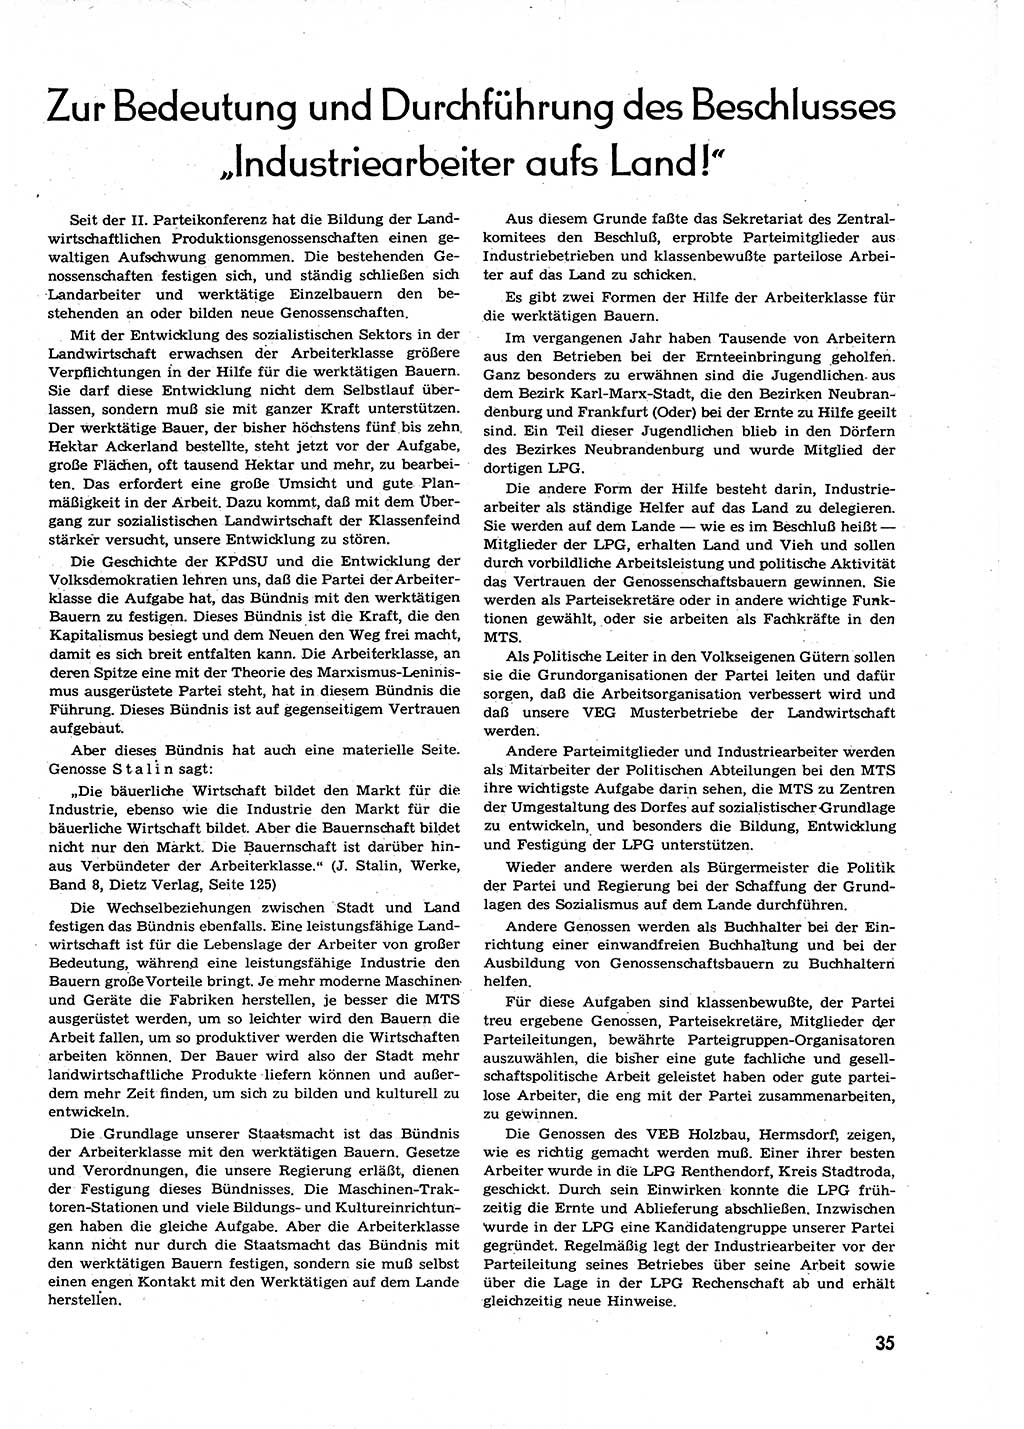 Neuer Weg (NW), Organ des Zentralkomitees (ZK) der SED (Sozialistische Einheitspartei Deutschlands) für alle Parteiarbeiter, 9. Jahrgang [Deutsche Demokratische Republik (DDR)] 1954, Heft 6/35 (NW ZK SED DDR 1954, H. 6/35)